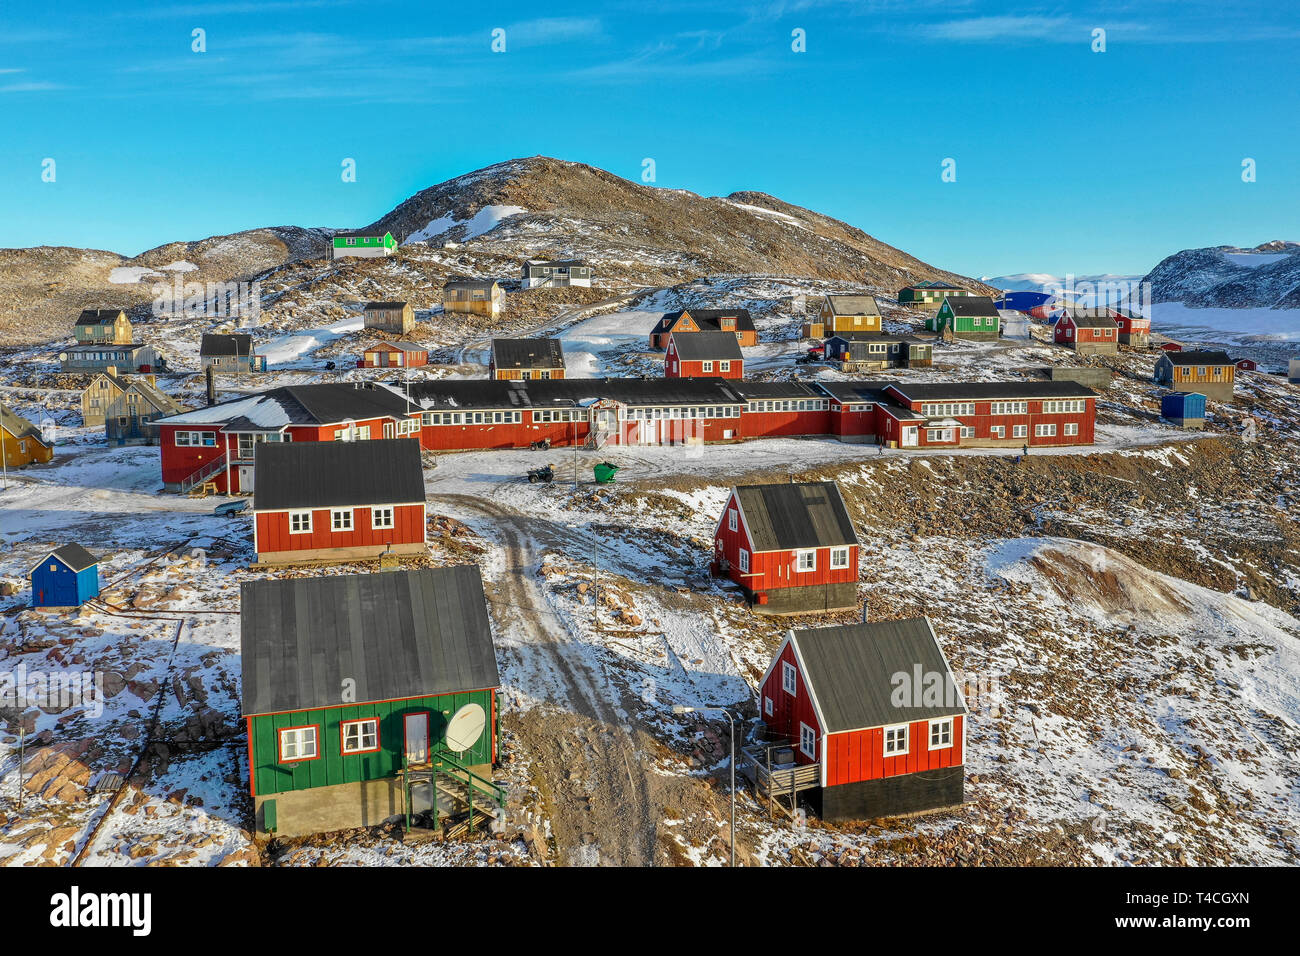 Village Ittoqqortoormiit, Illoqqortoormiut (Groenlandais) Scoresbysund (danois), Groenland Banque D'Images